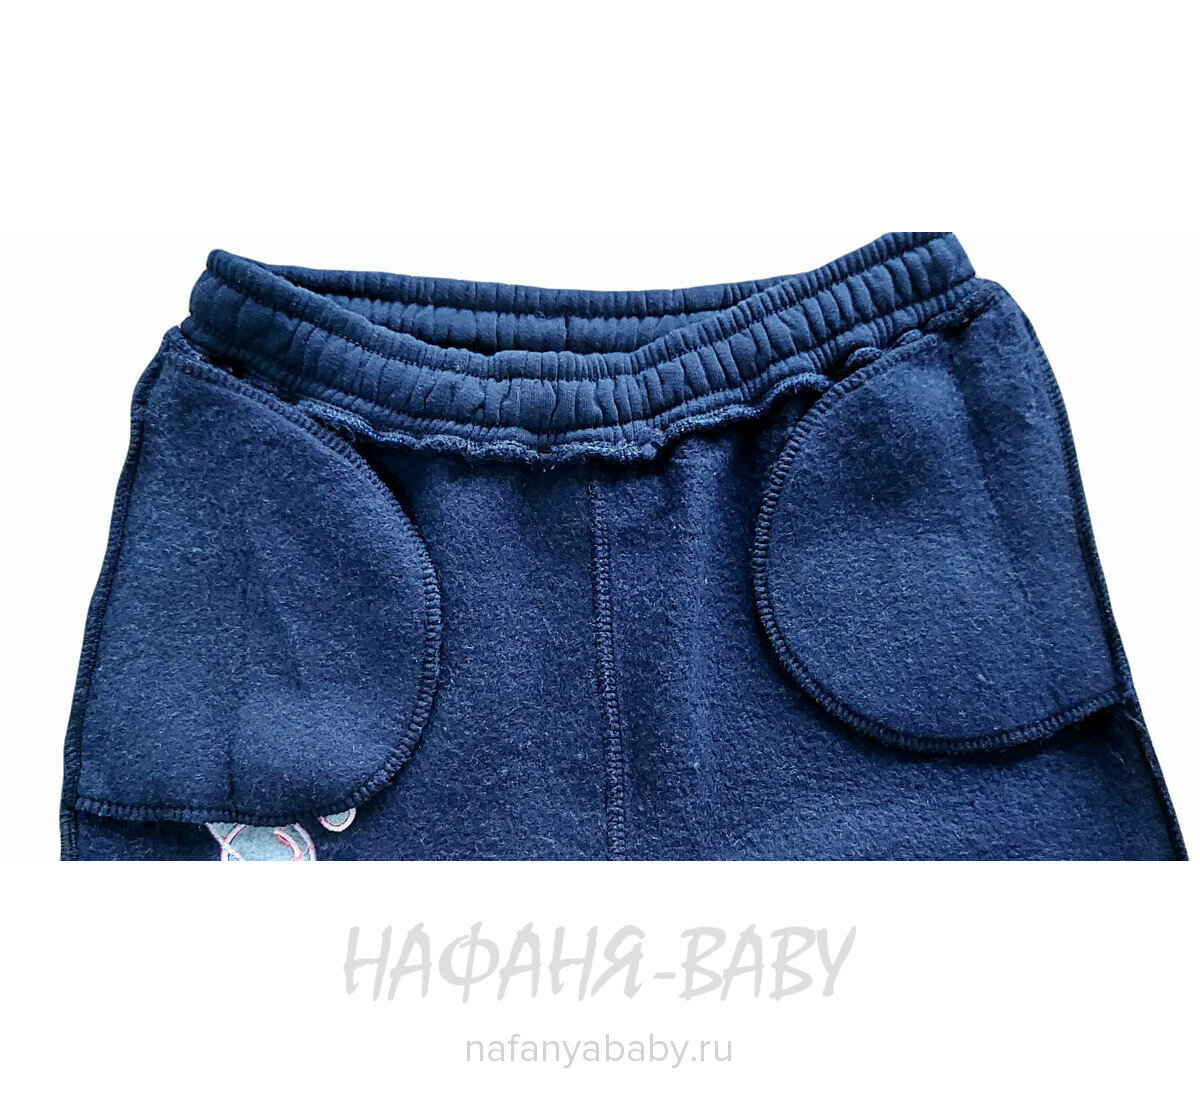 Теплые брюки с начесом MISIL арт: 3636 9-12, 5-9 лет, 10-15 лет, цвет темно-синий, оптом Турция